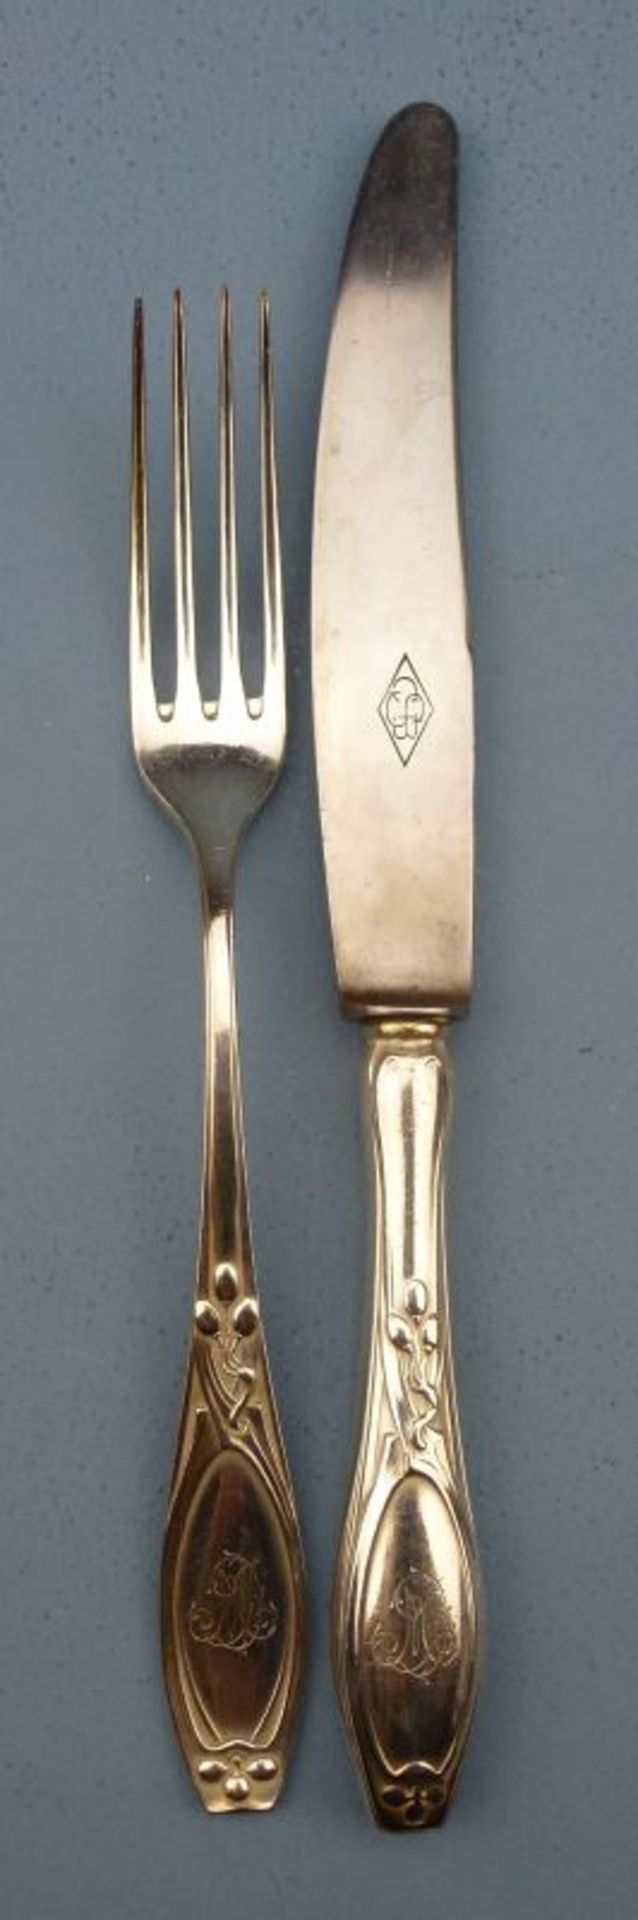 Messer und Gabeln für 6 Pers.Messer und Gabeln für 6 Pers.C.B. Schröder, Düsseldorf, um 1900 - Image 2 of 3